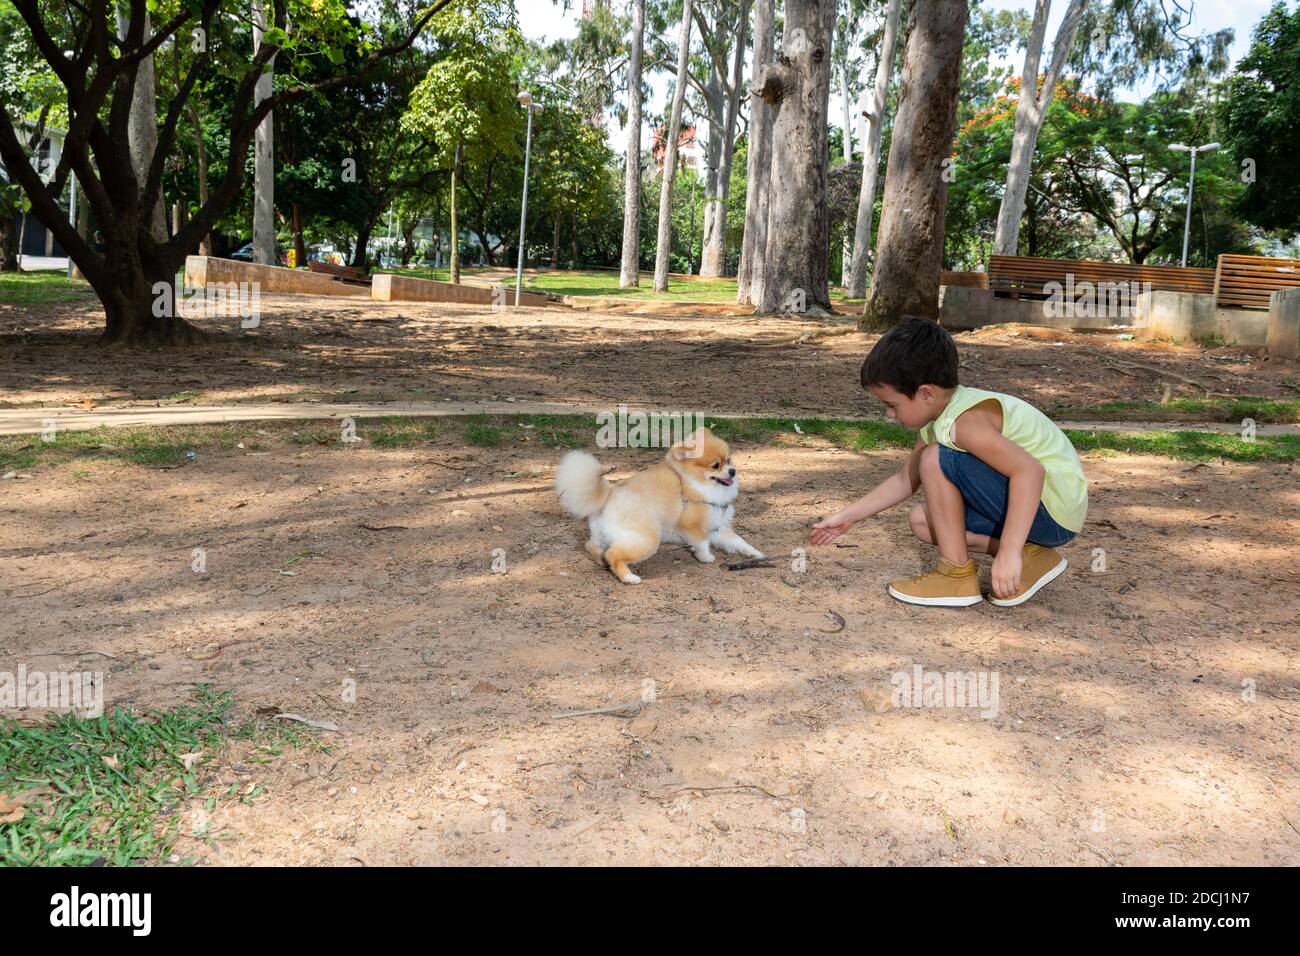 Niño de 6 años en una tarde en la plaza Honório Sabino jugando en bicicleta, con perros y comiendo palomitas. Foto de stock